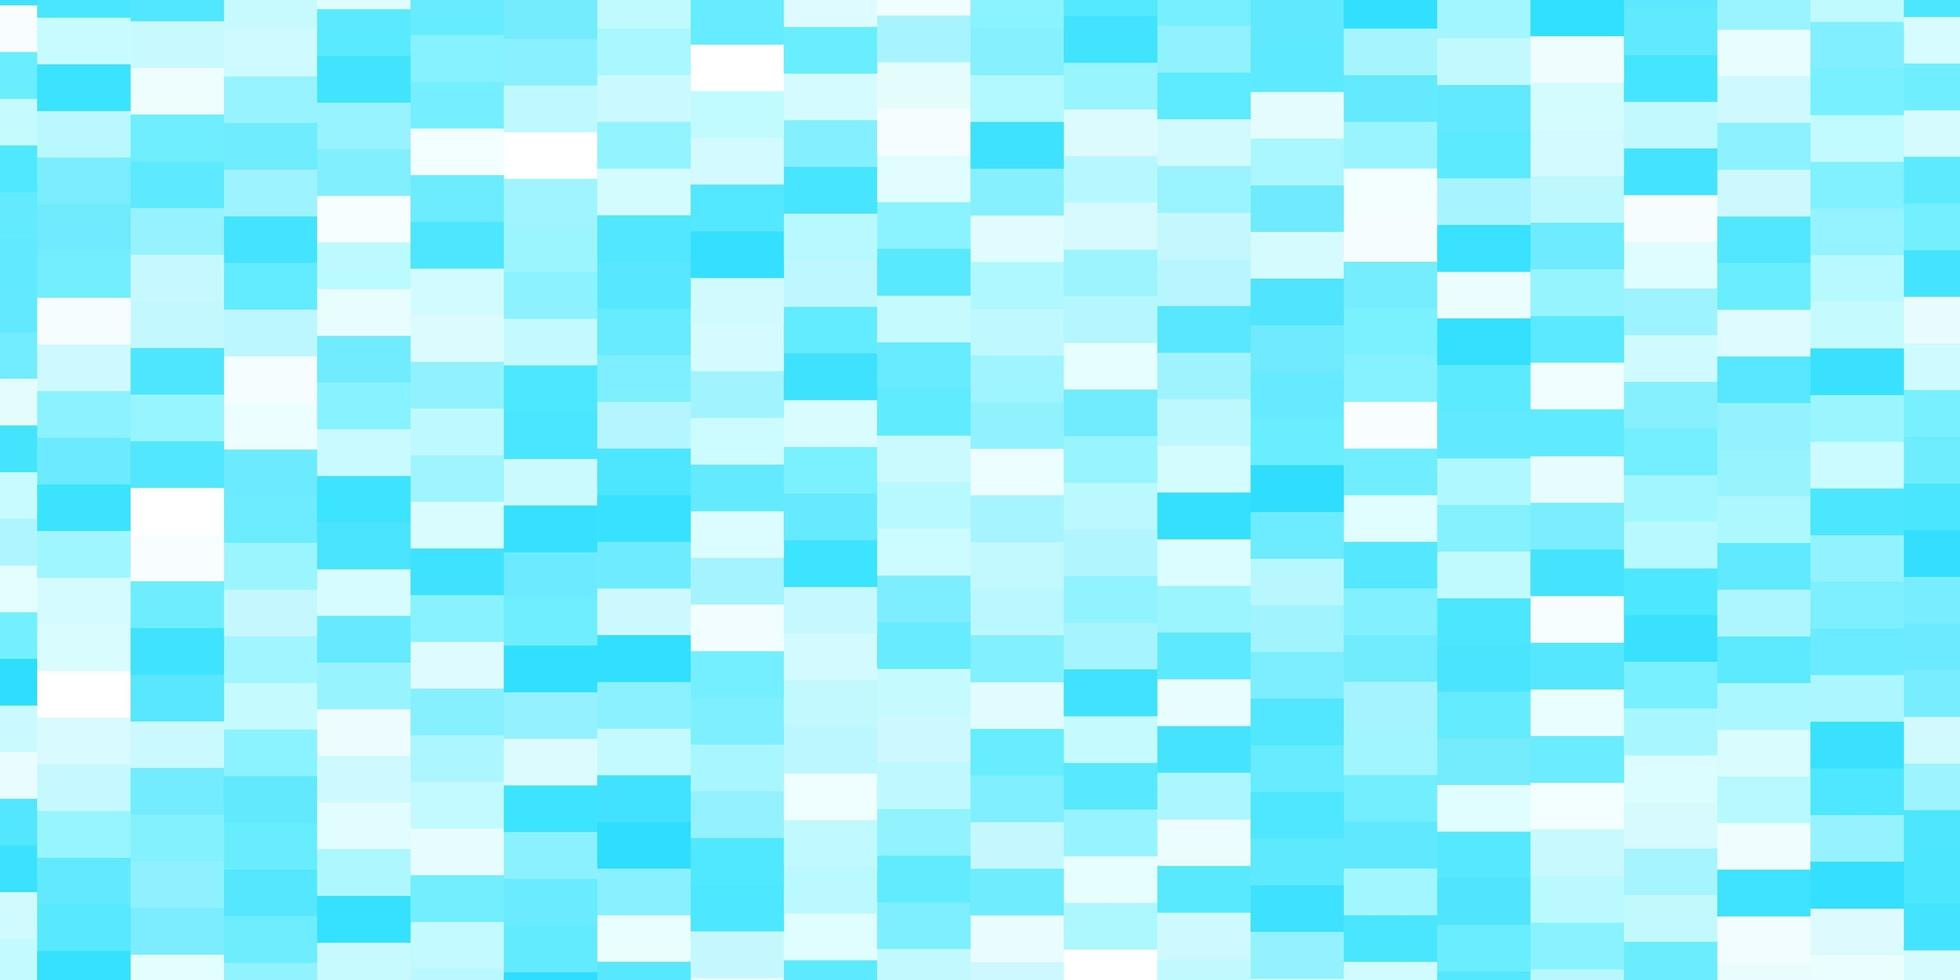 textura de vector azul claro en estilo rectangular. nueva ilustración abstracta con formas rectangulares. patrón para sitios web, páginas de destino.